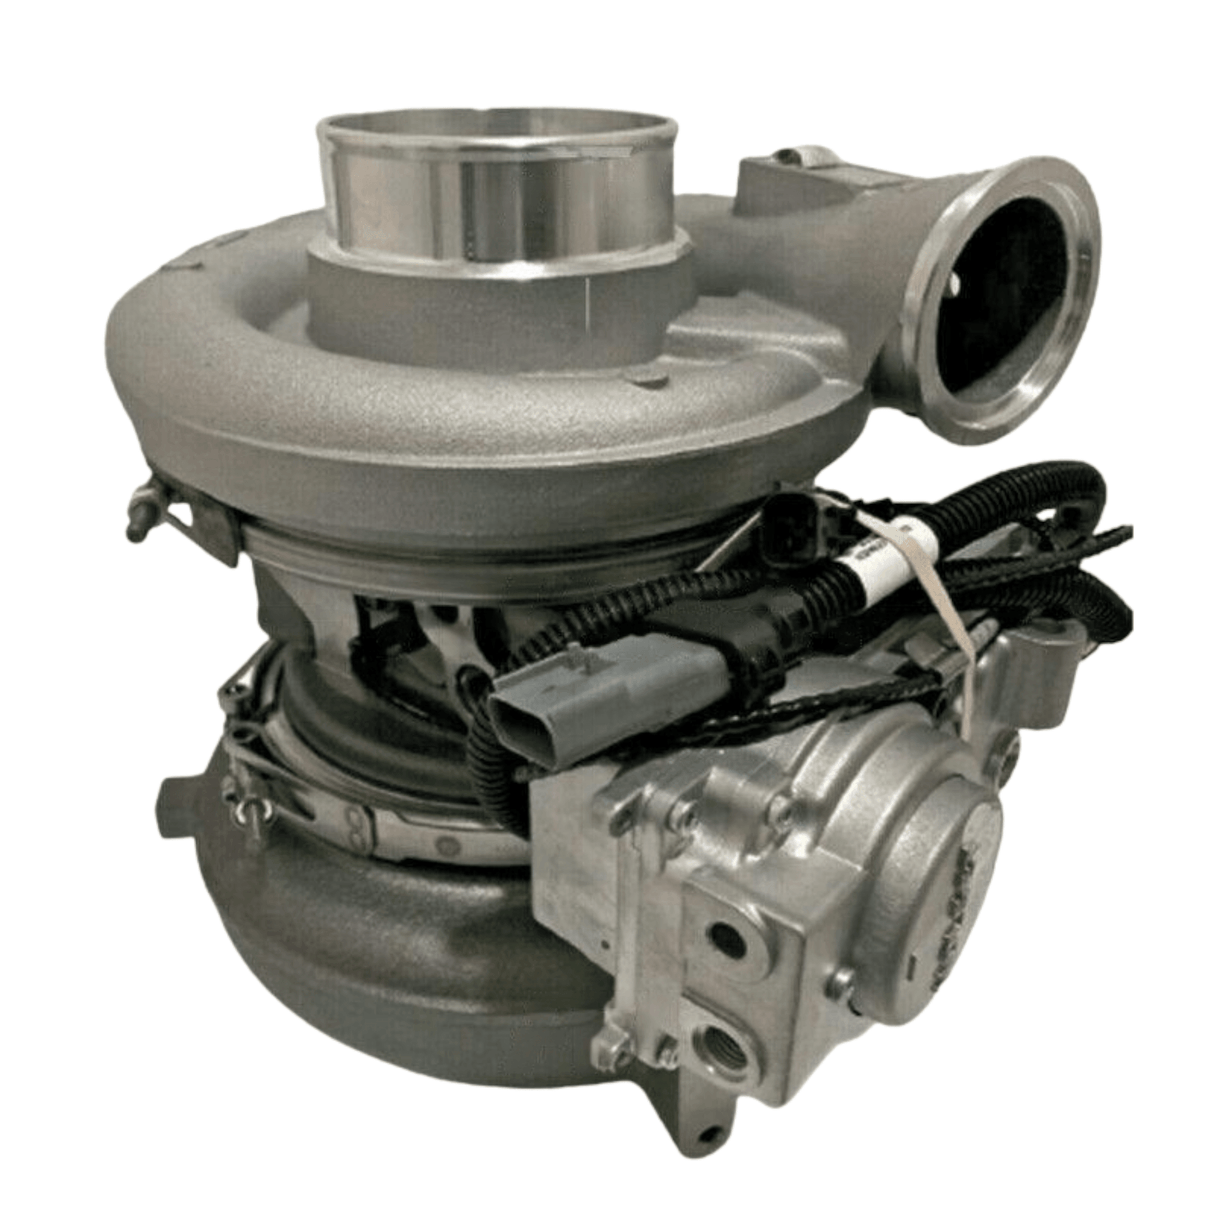 E23539570 Genuine Detroit Diesel Turbocharger For Detroit Diesel Series 60.